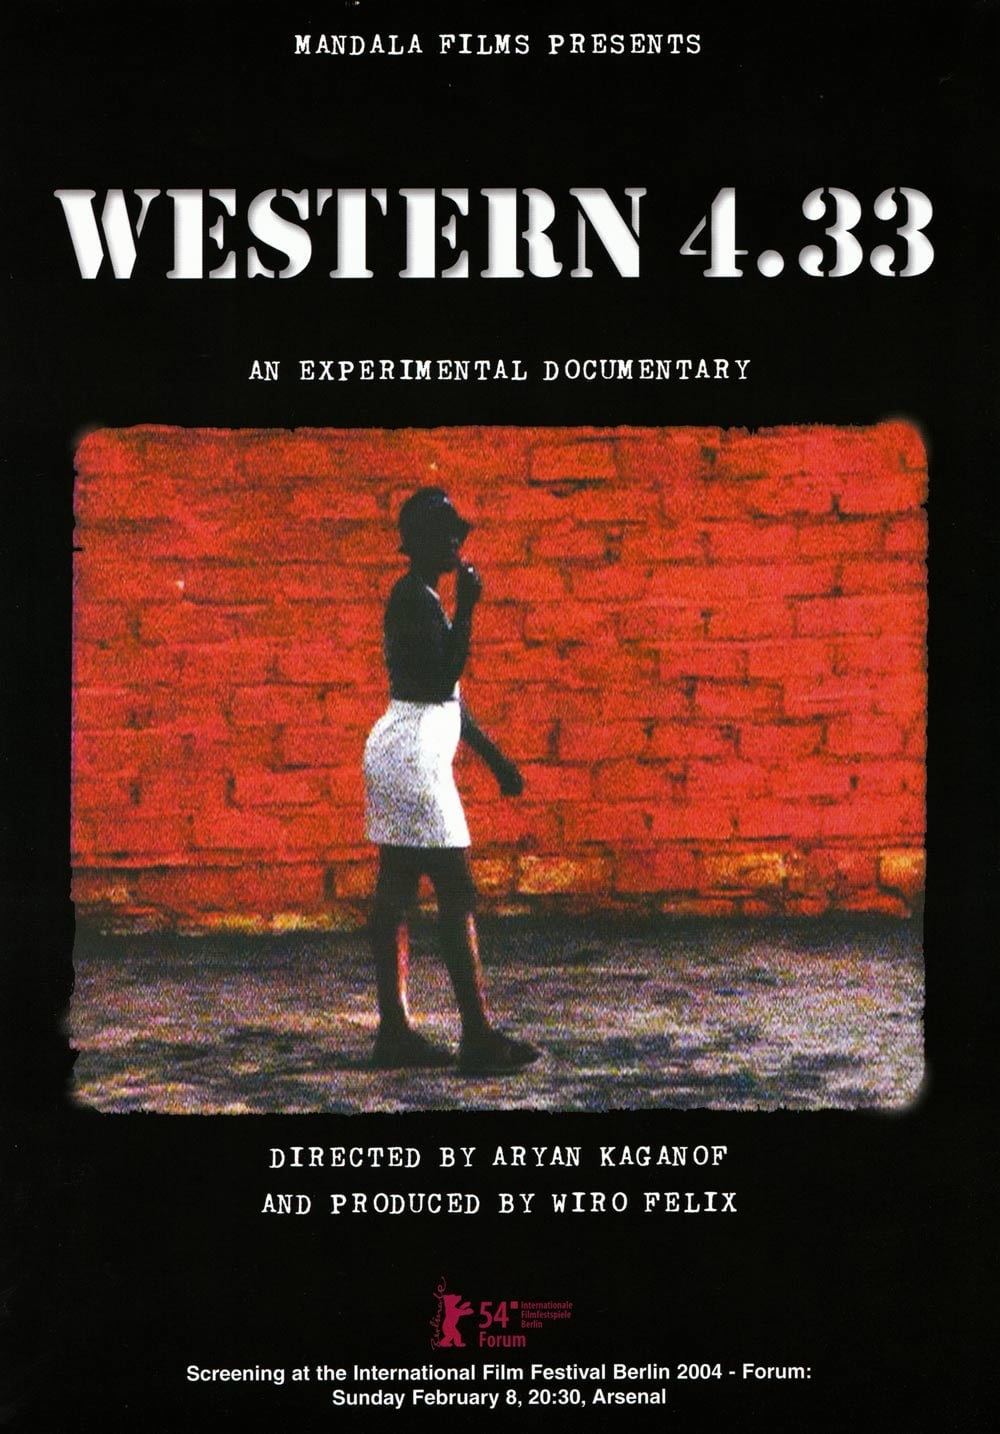 Western 4.33